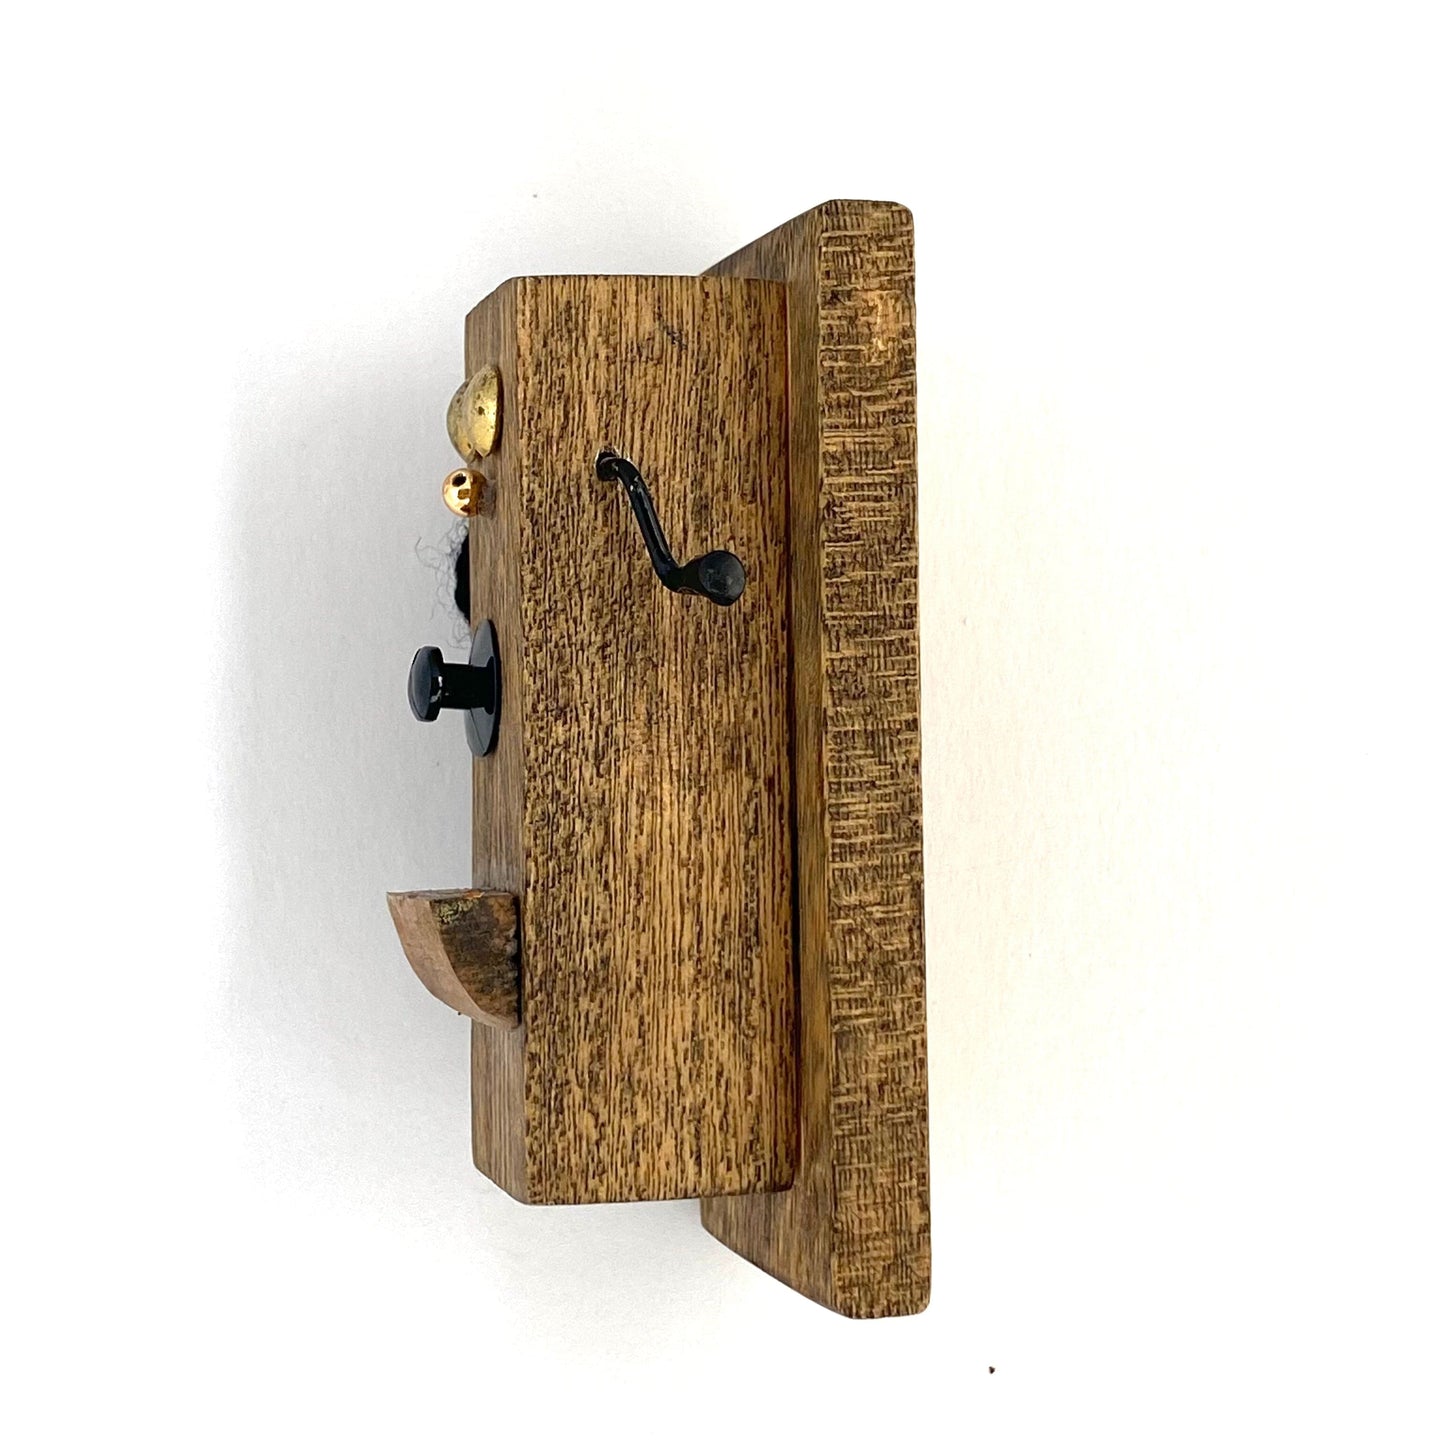 Vintage Wooden Telephone Novelty Refrigerator Magnet